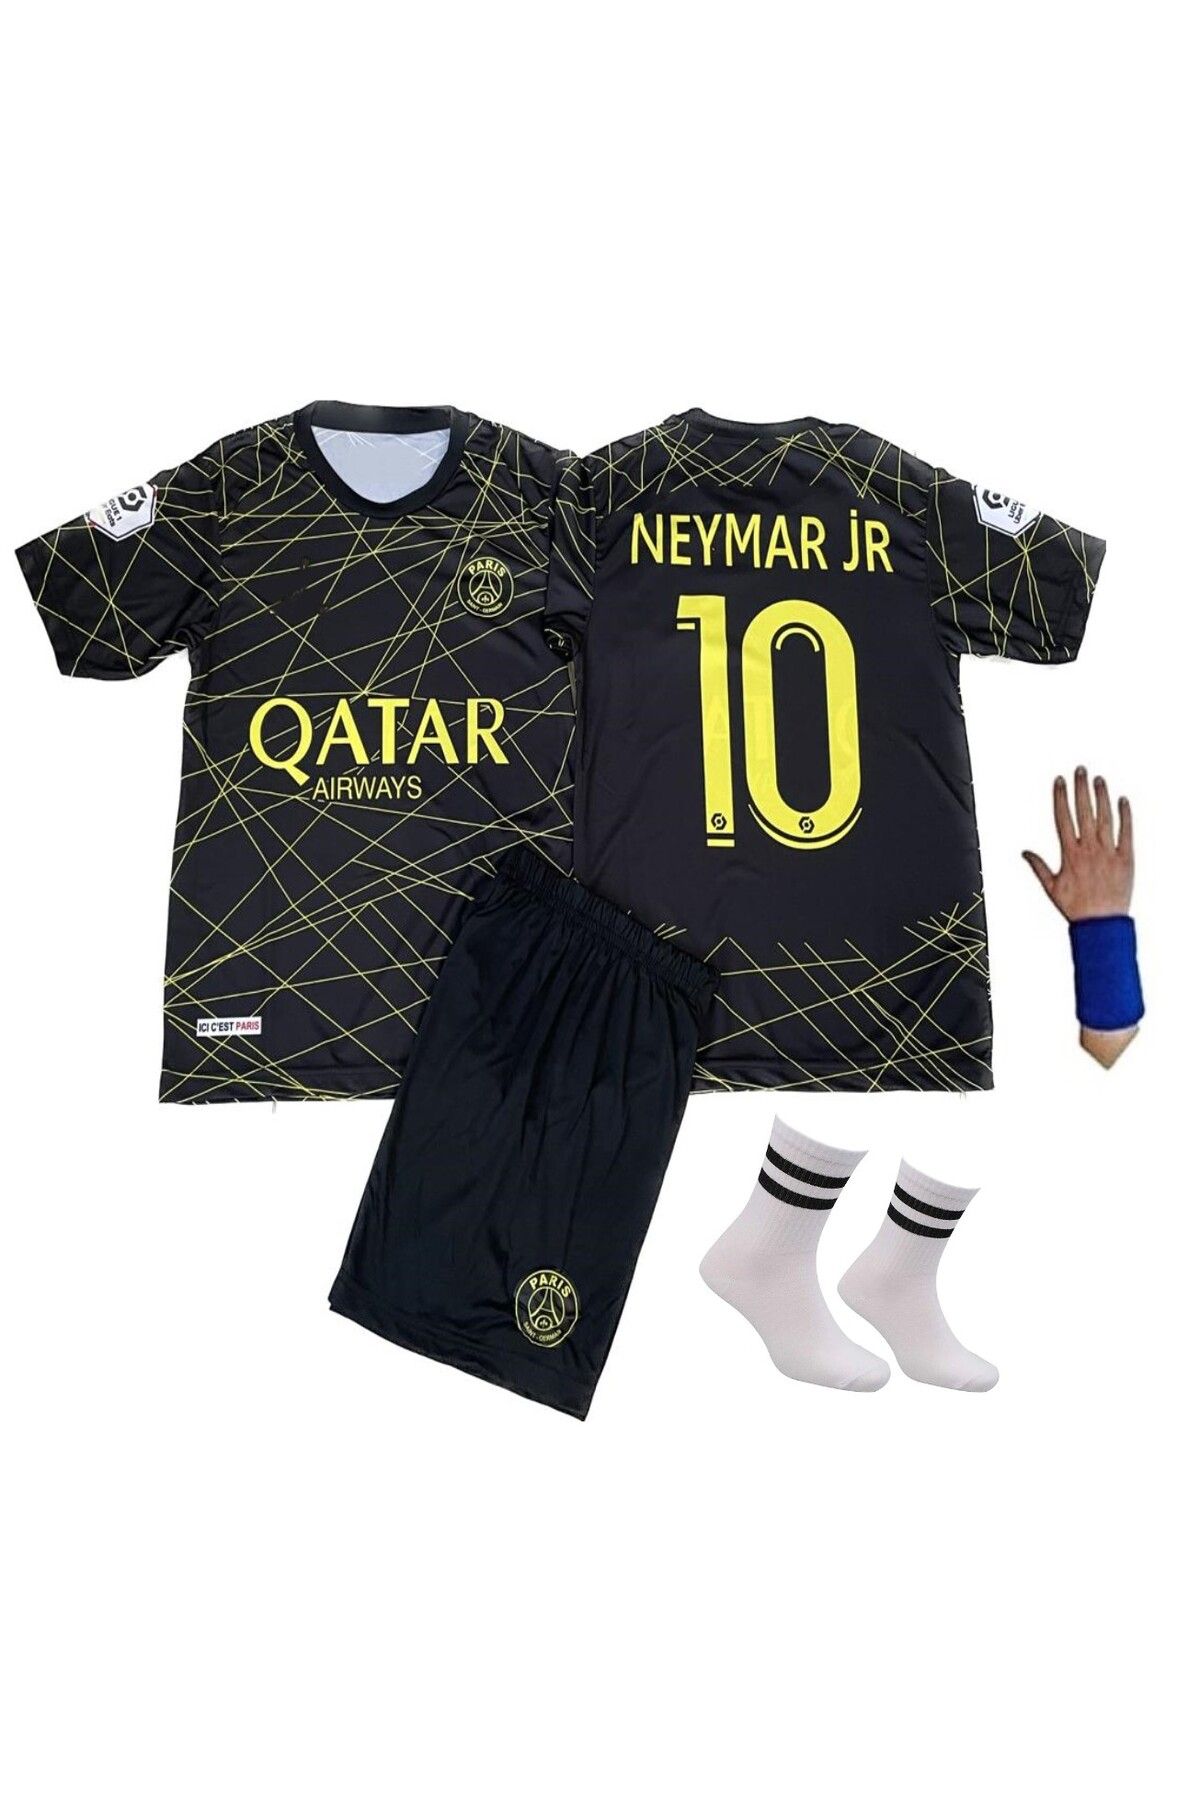 yenteks Neymar Jr Psg 2022/23 Sezon Gold Çizgili 4 Lü Set Çocuk Forma Takımı Özel Tasarım